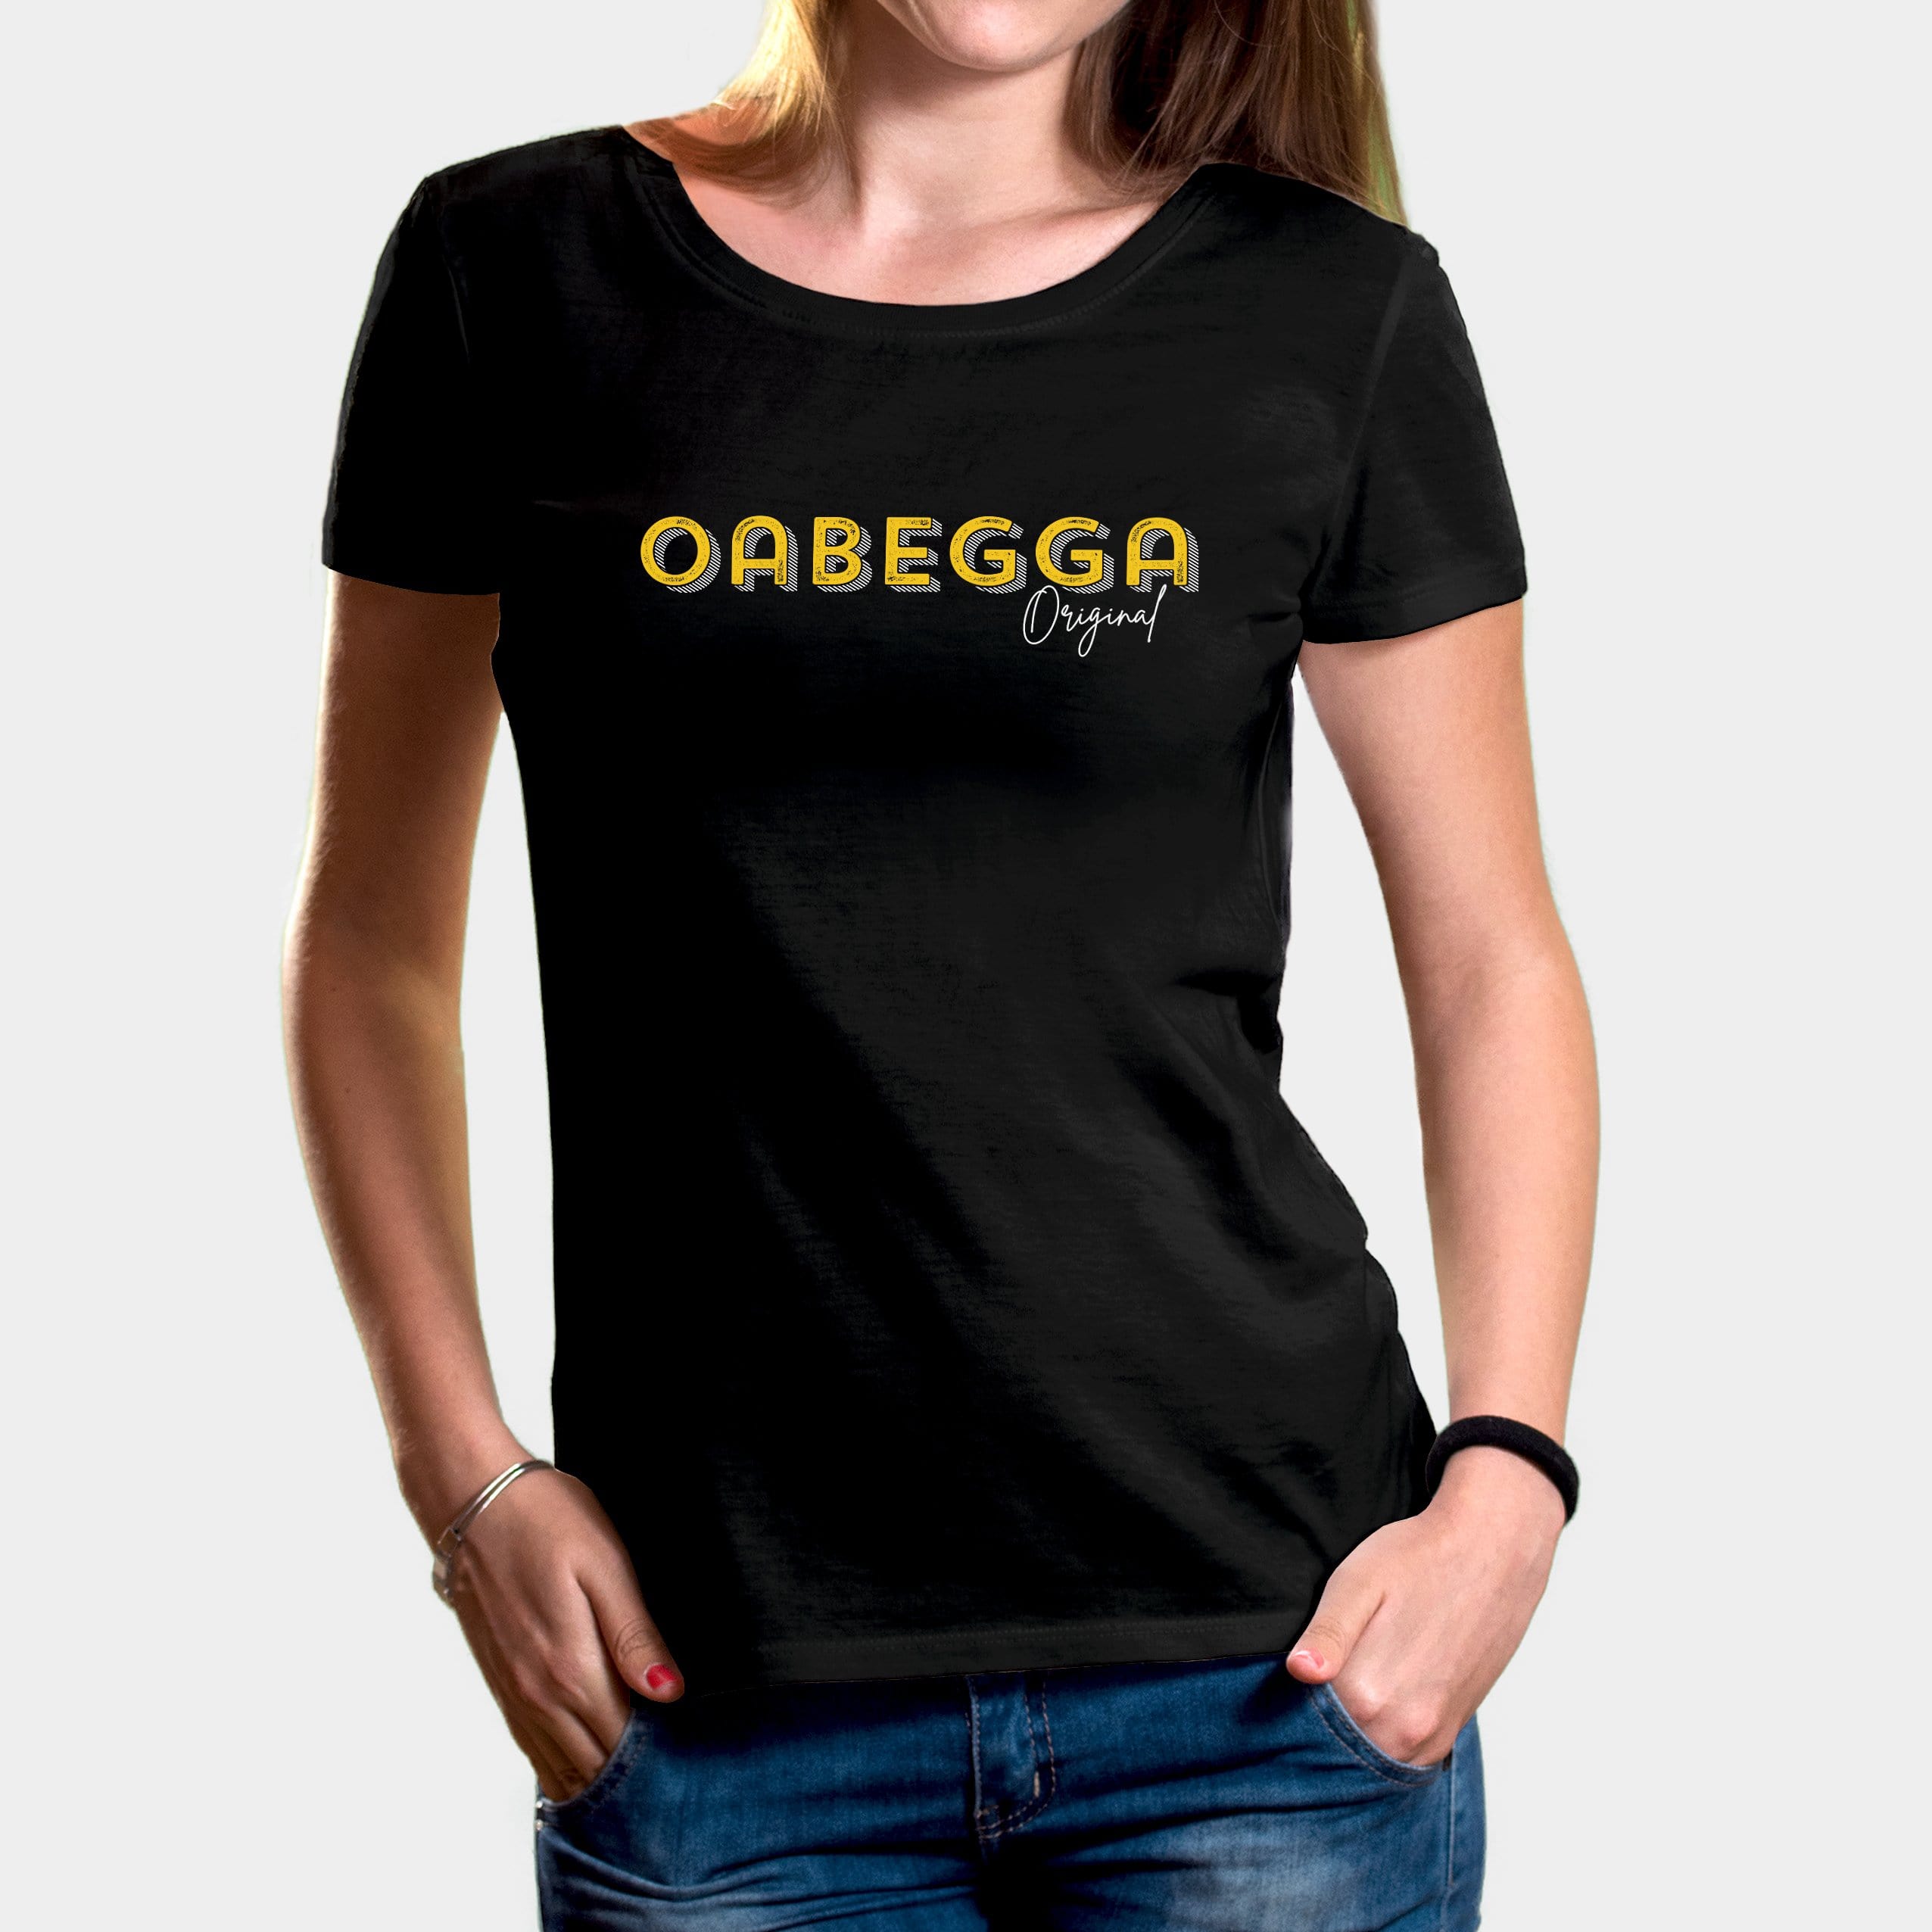 Projekt Damen-T-Shirt "Oabegga Original" XS / schwarz - aus nachhaltiger und fairer Produktion